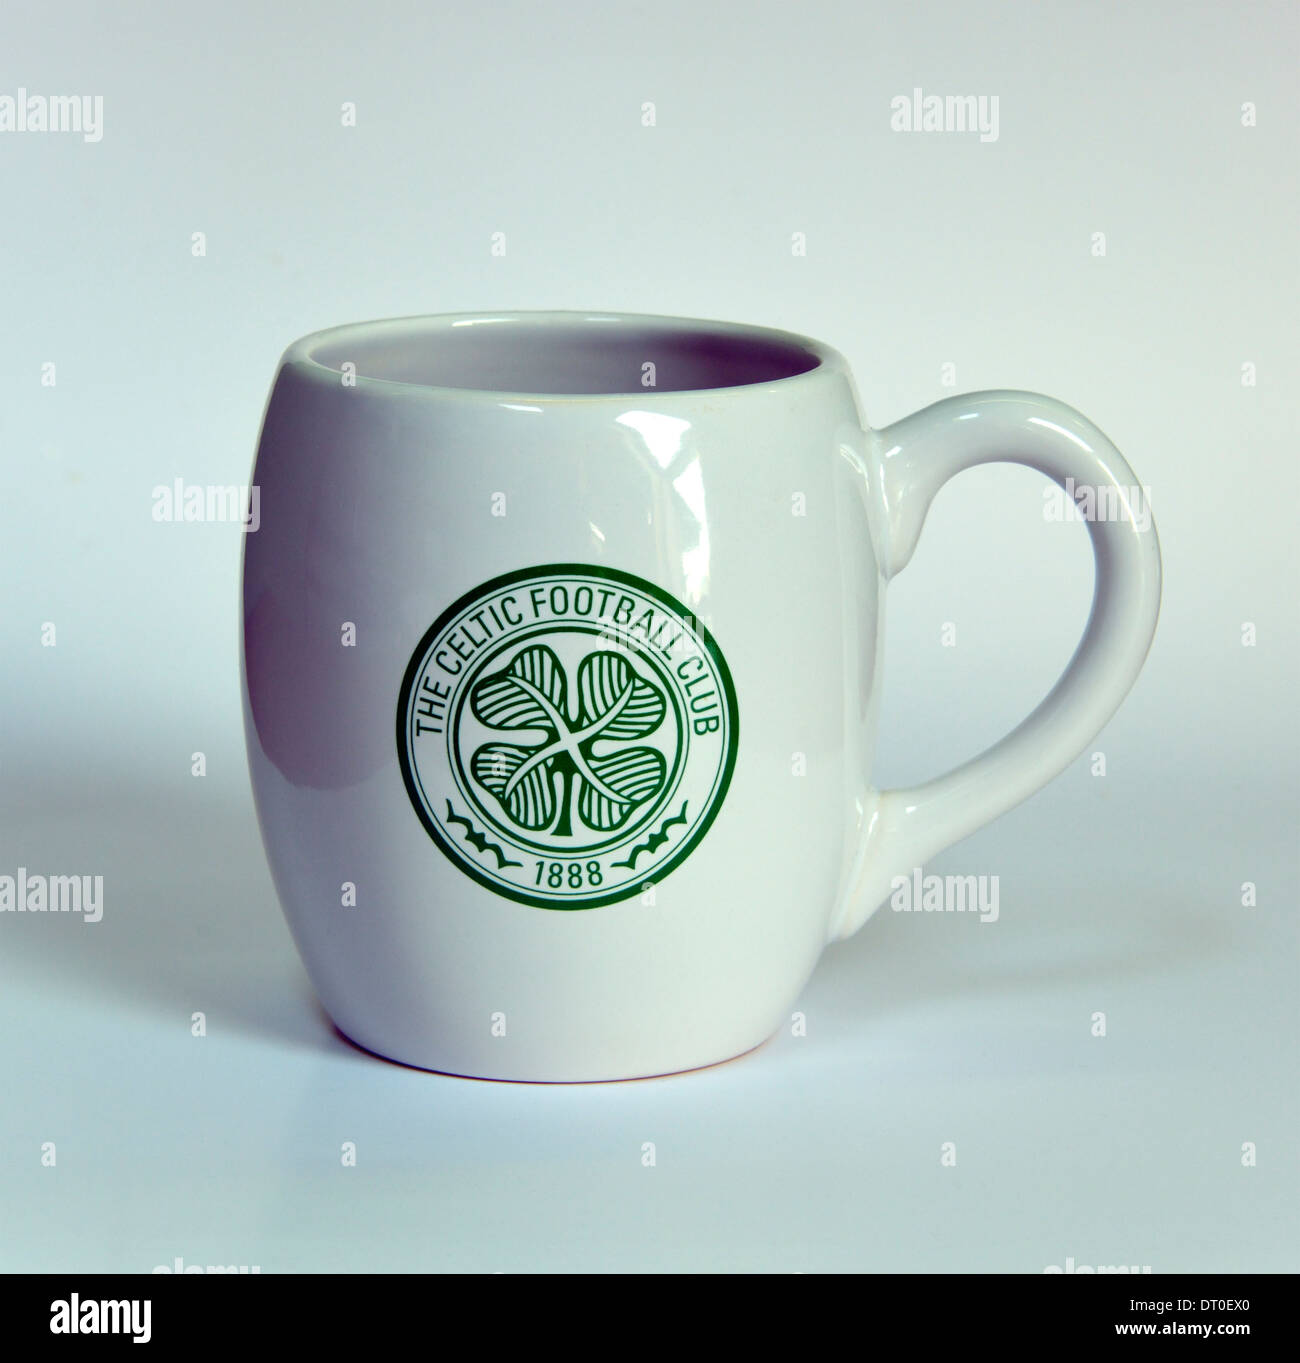 The Celtic Football Club 1888 souvenir ceramic mug. Stock Photo